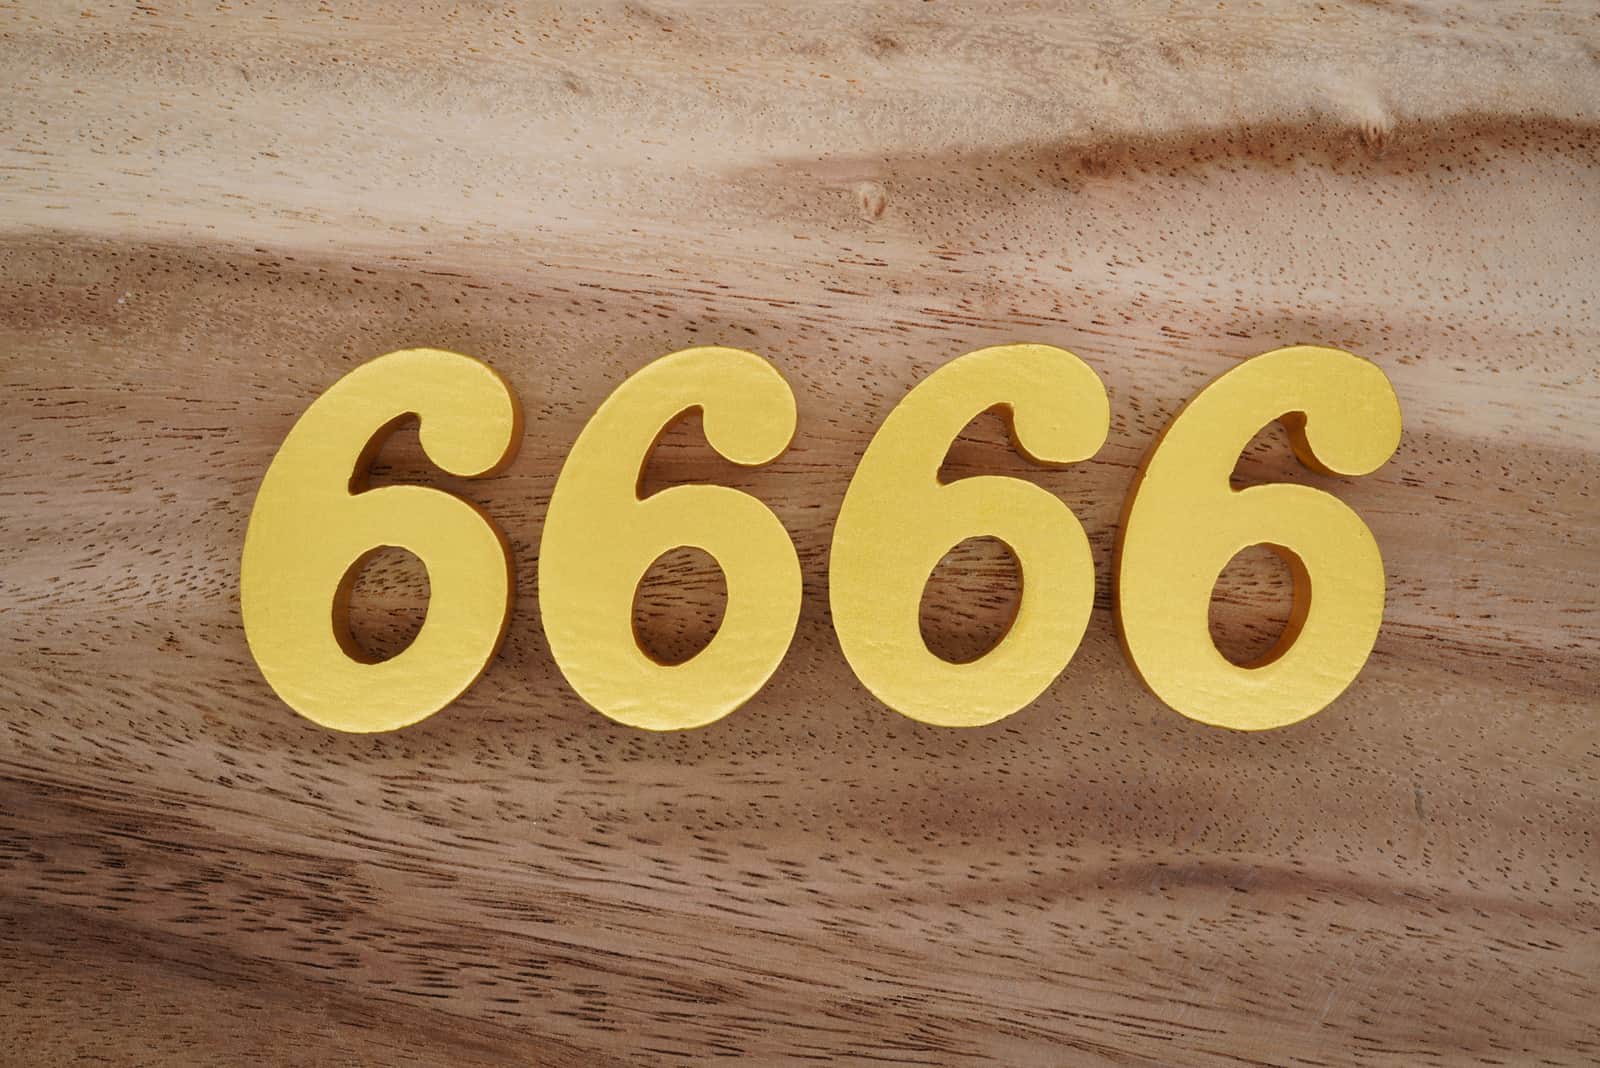 Numéro 6666 sur un fond de bois